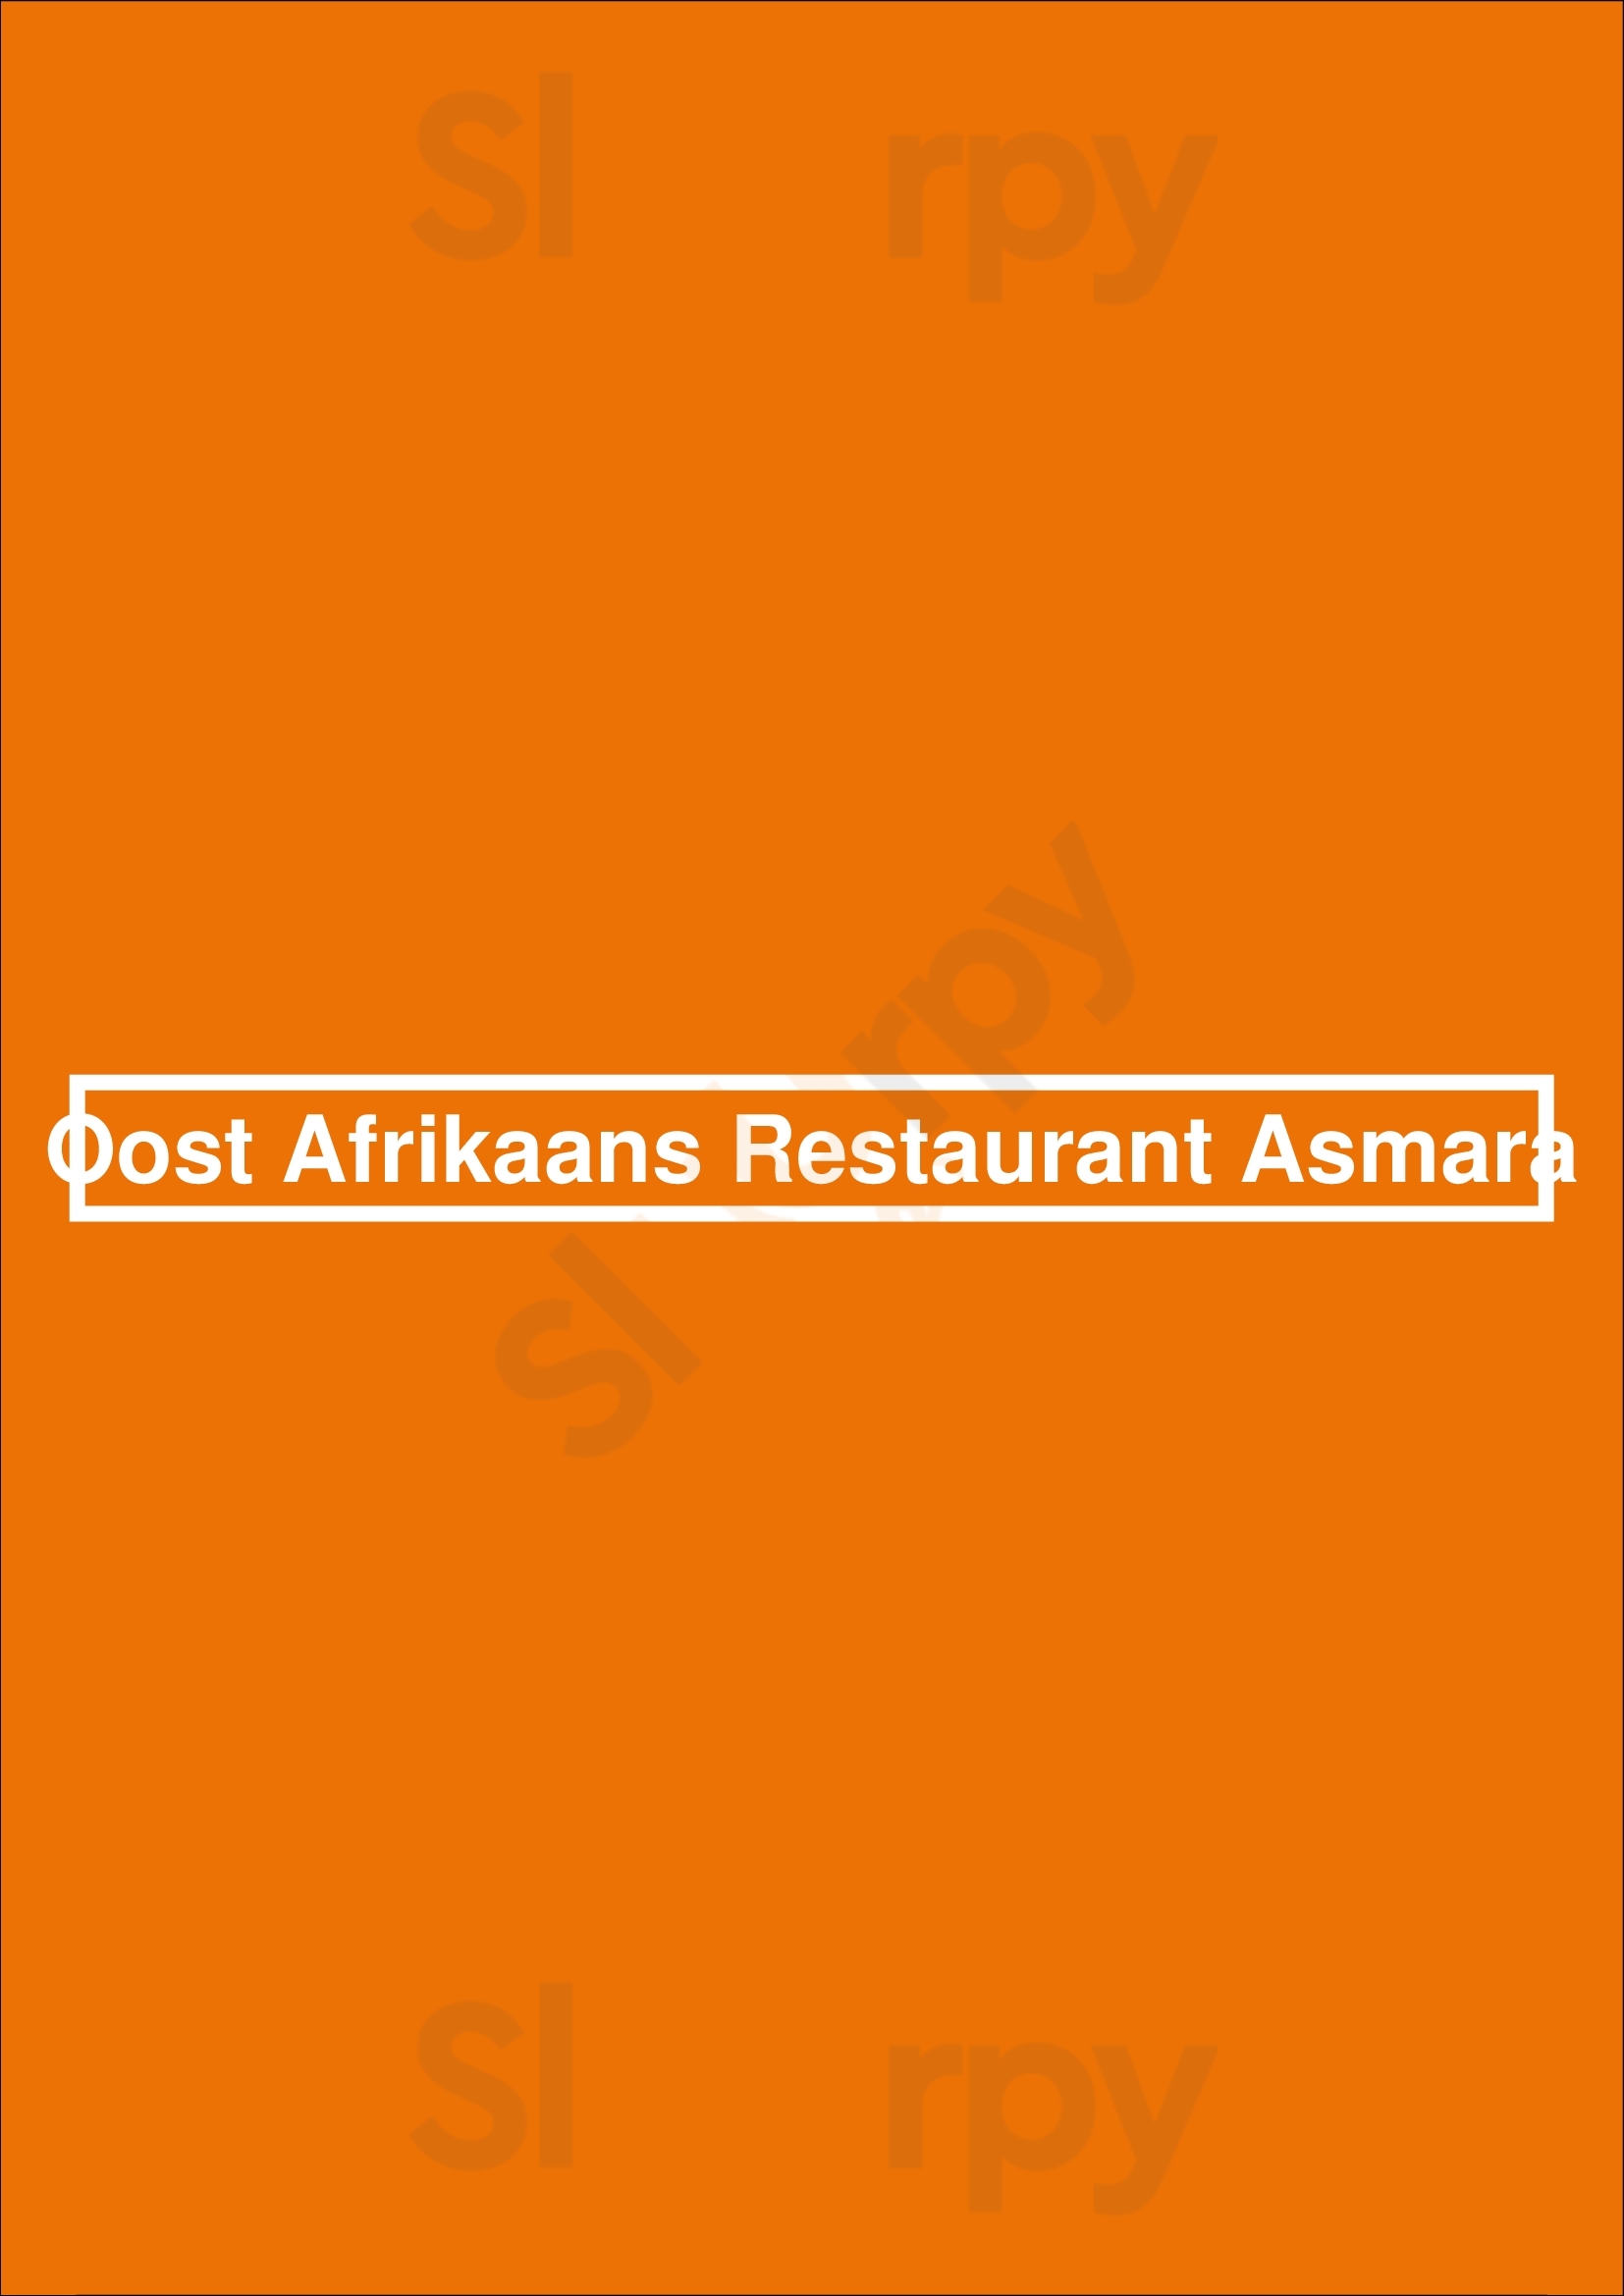 Oost Afrikaans Restaurant Asmara Eindhoven Menu - 1